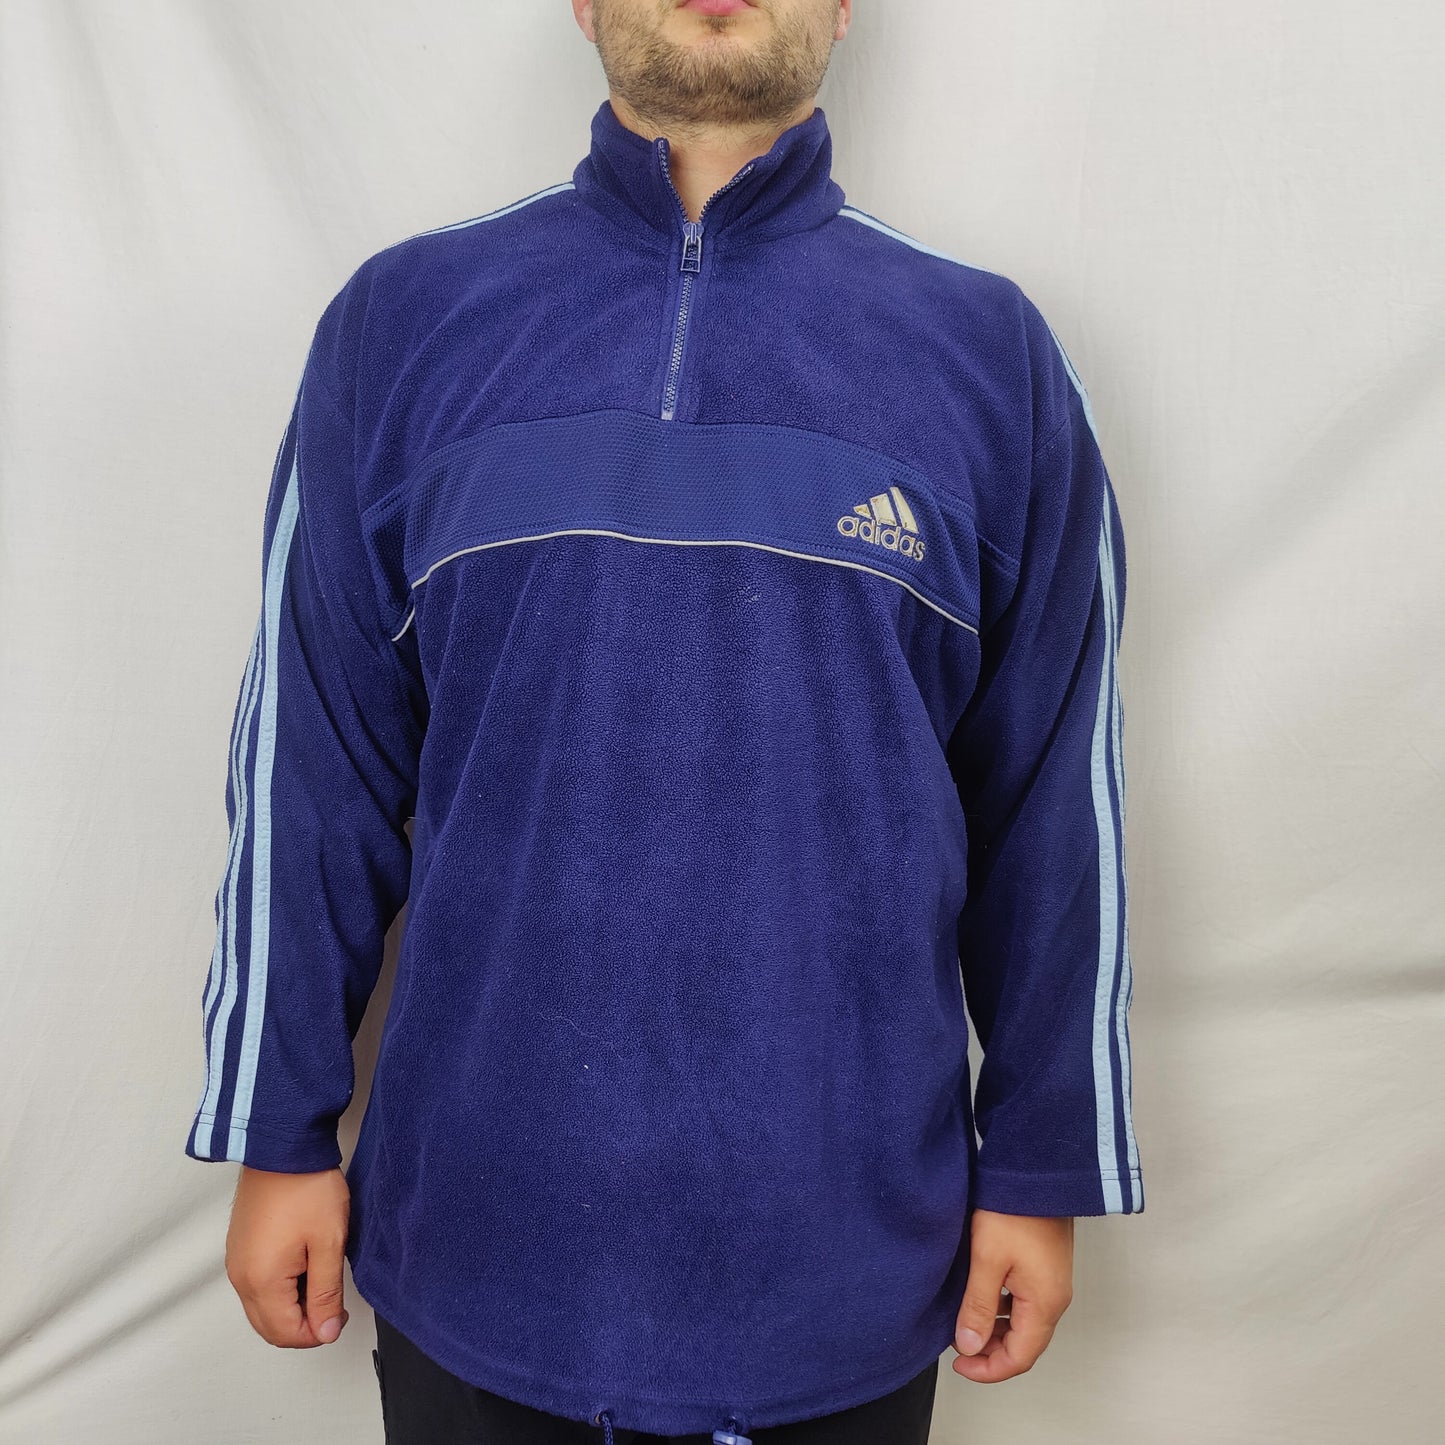 Adidas Vintage Blue Half Zip Fleece Jumper Sweatshirt Men Size Large